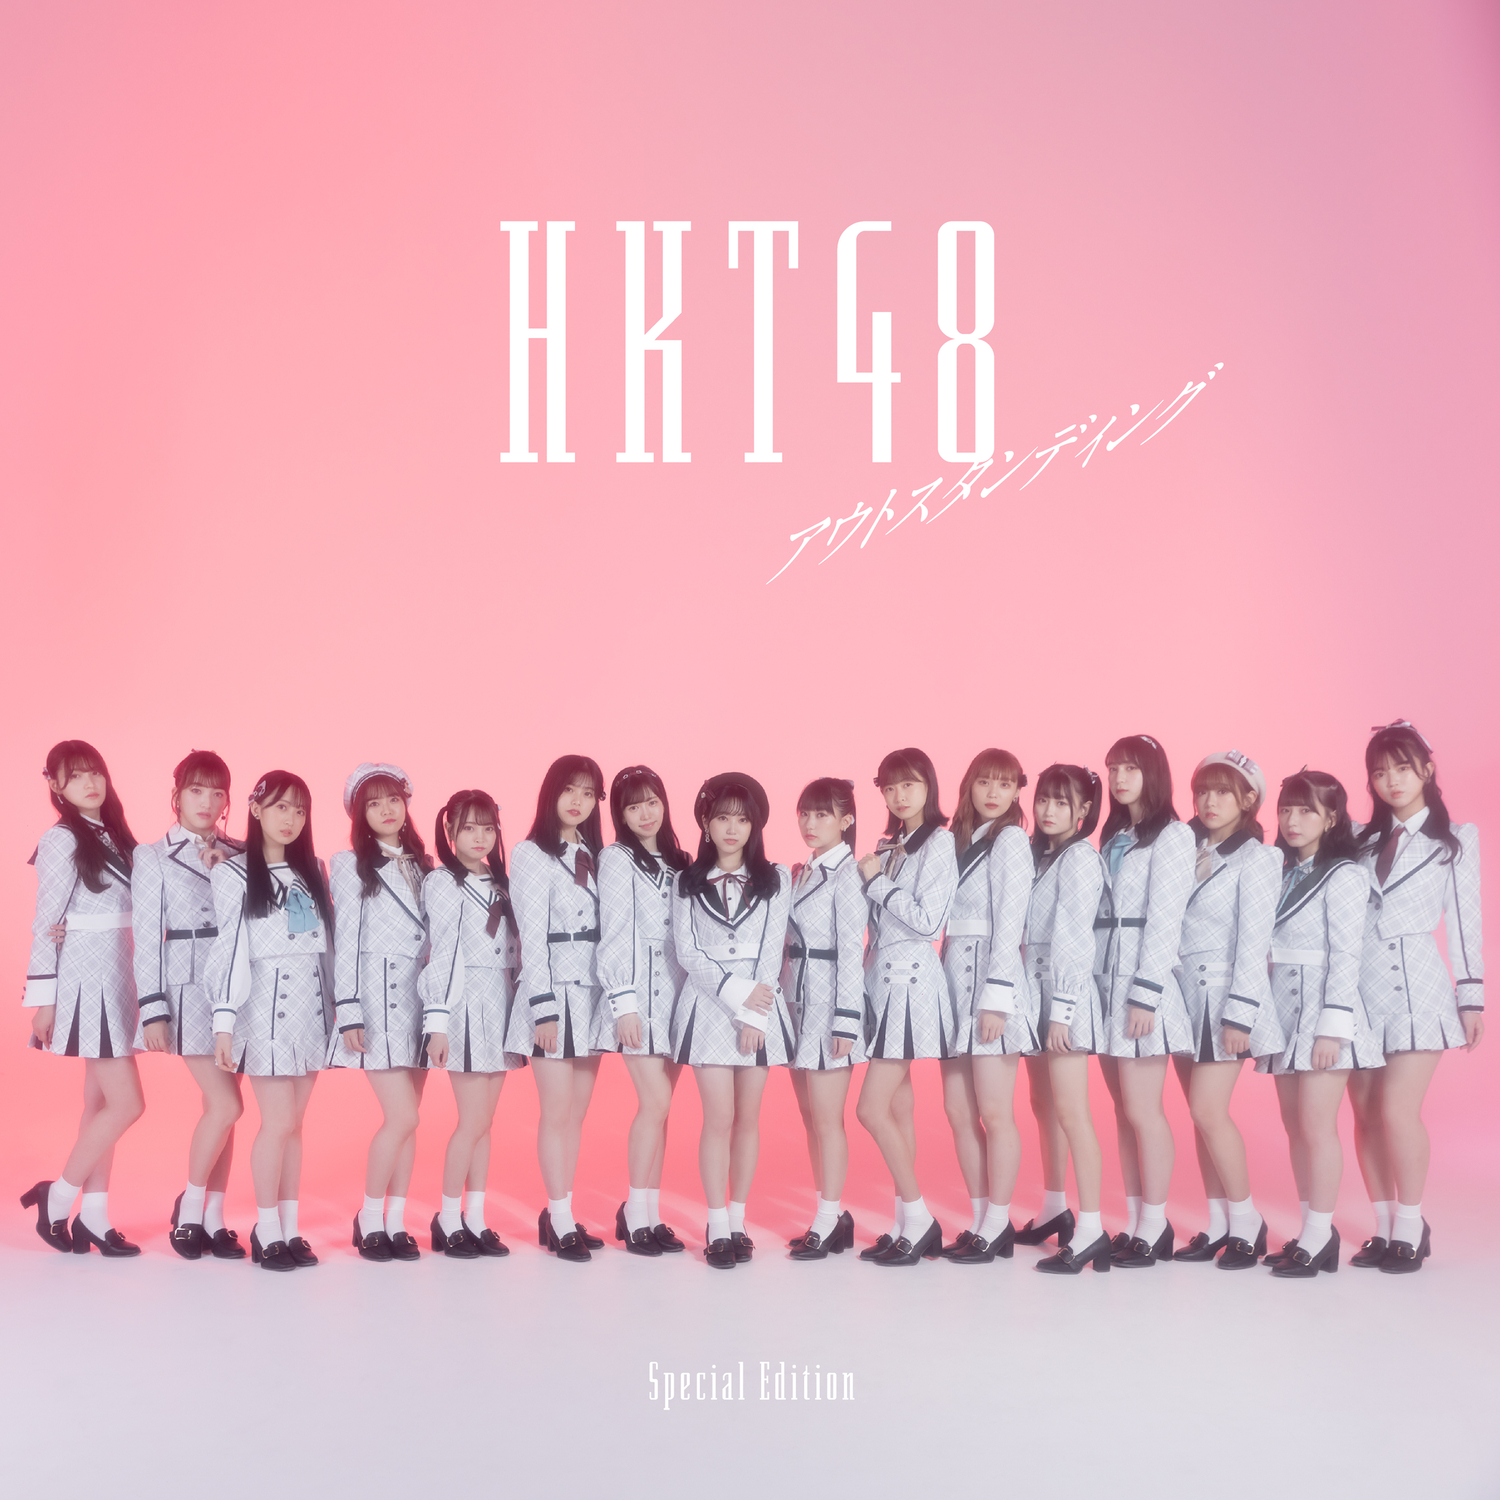 HKT48 — Outstanding cover artwork